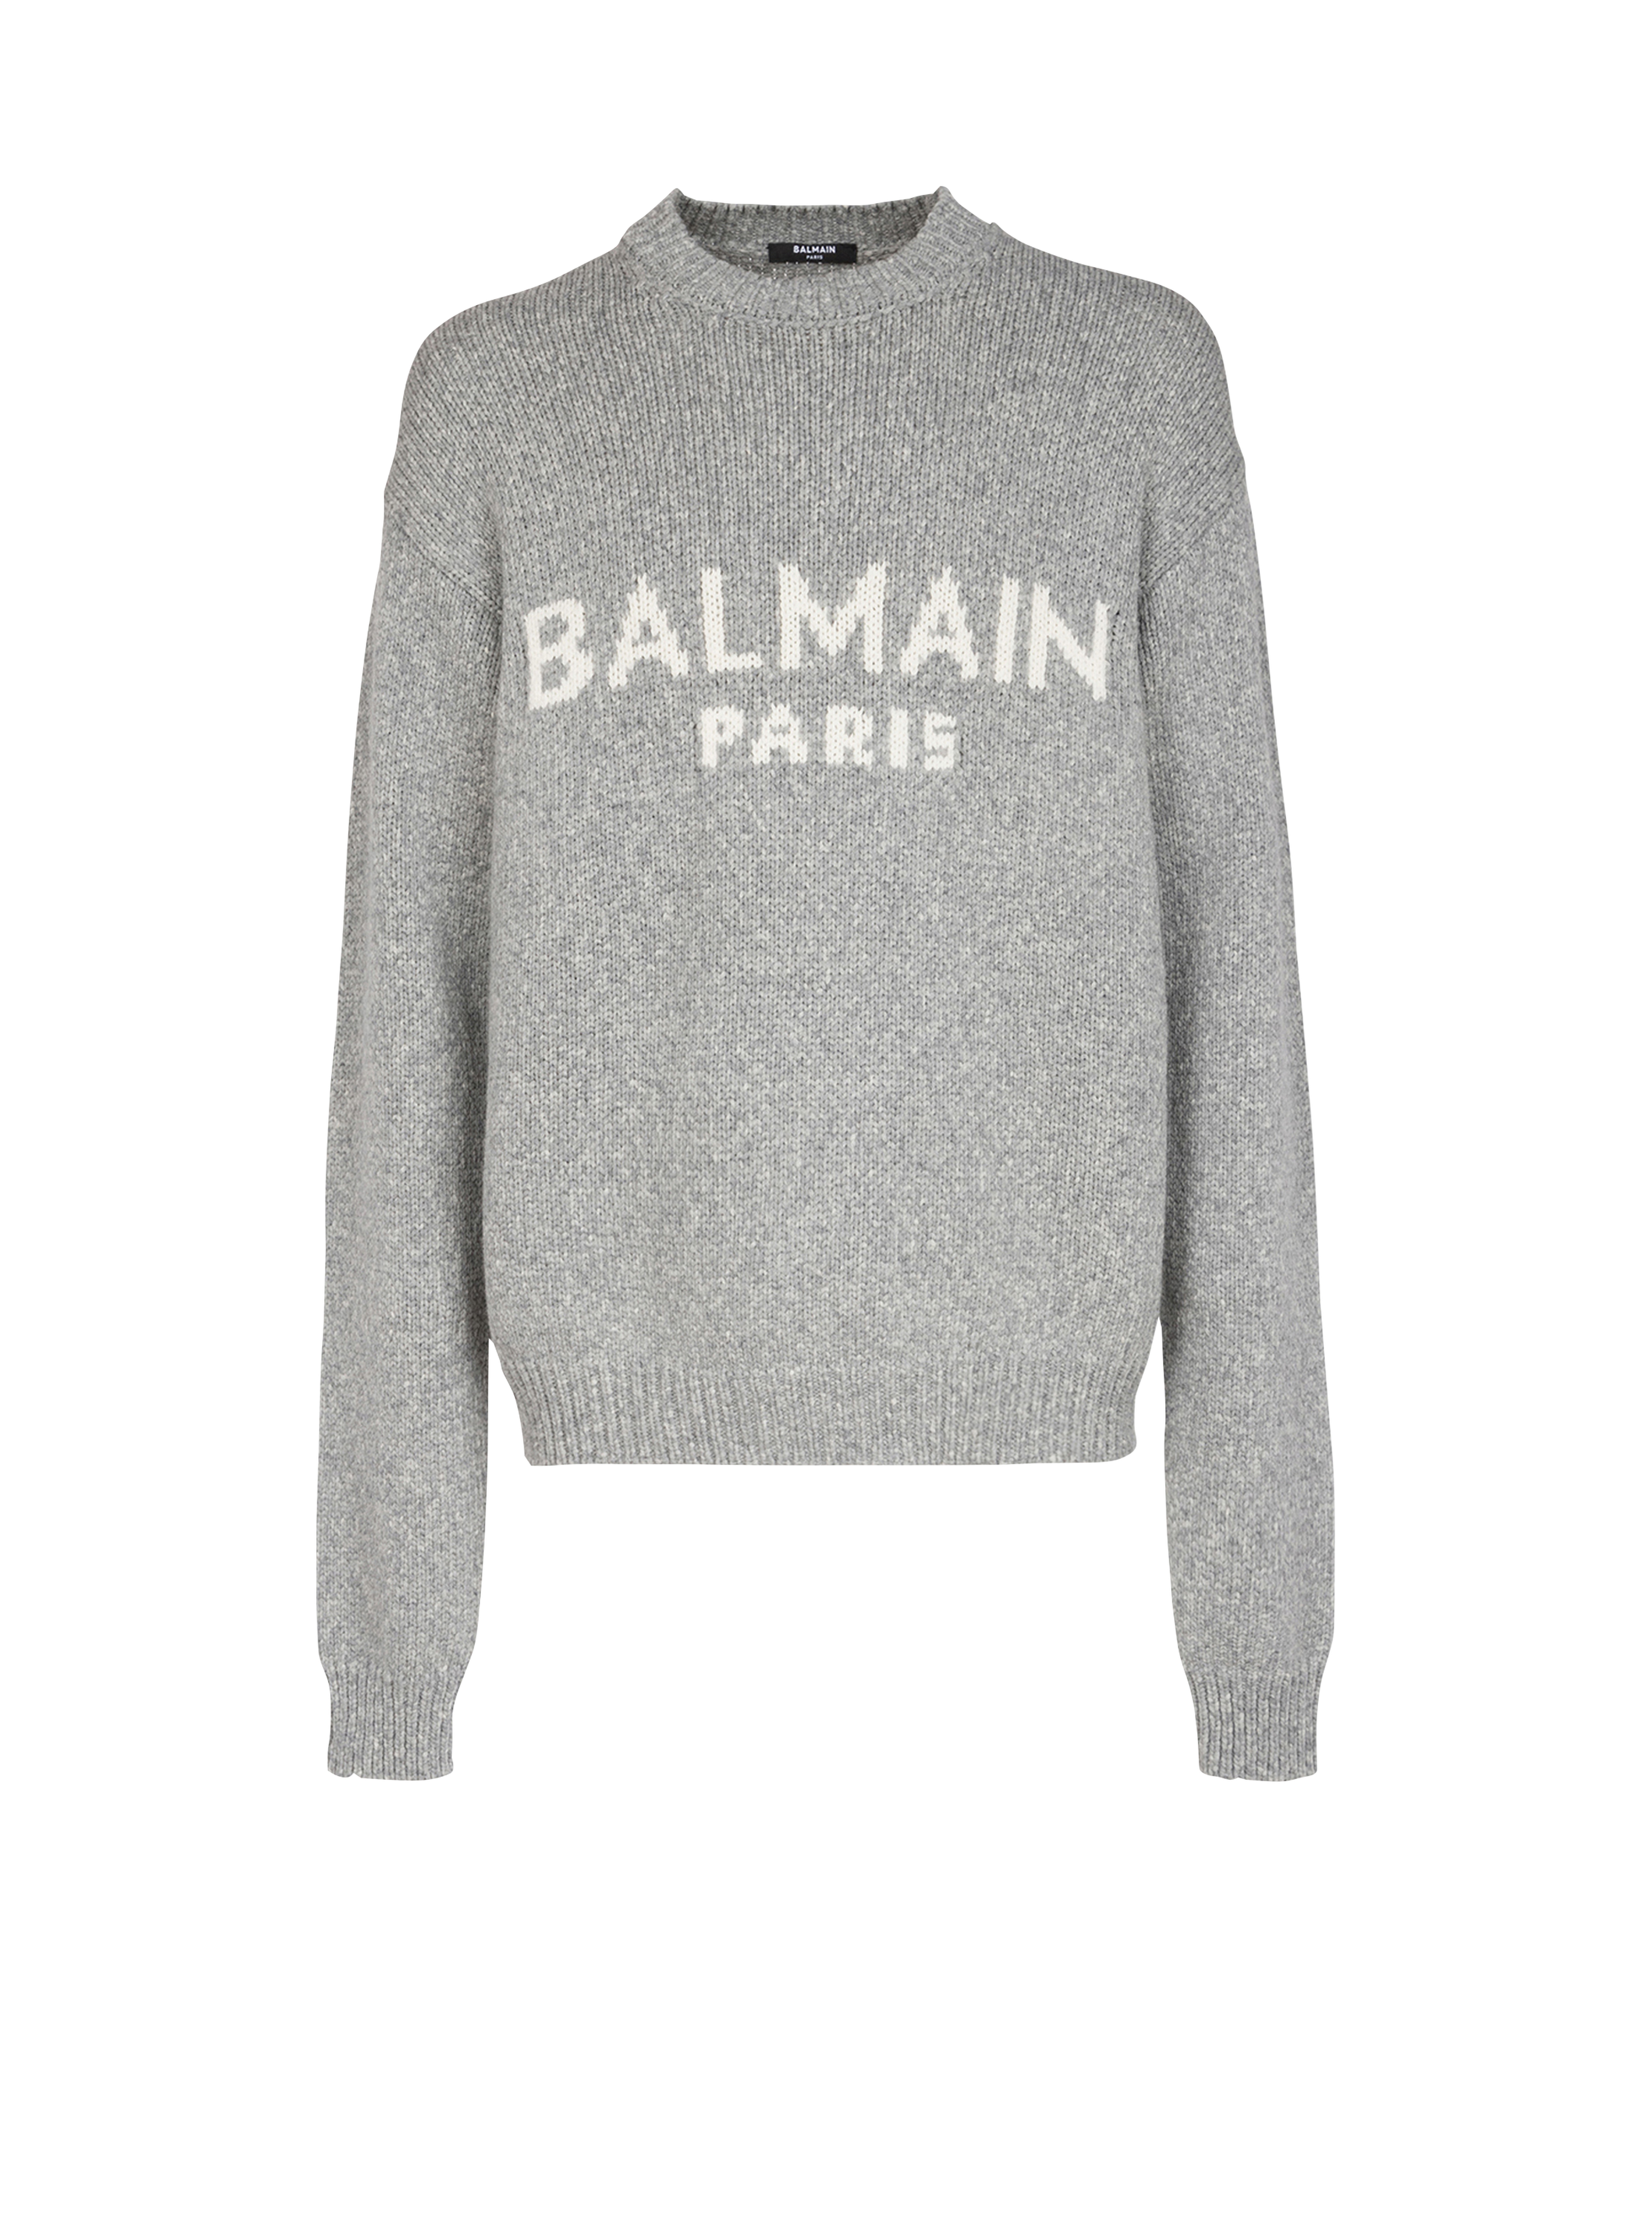 Pull en laine à logo Balmain Paris, gris